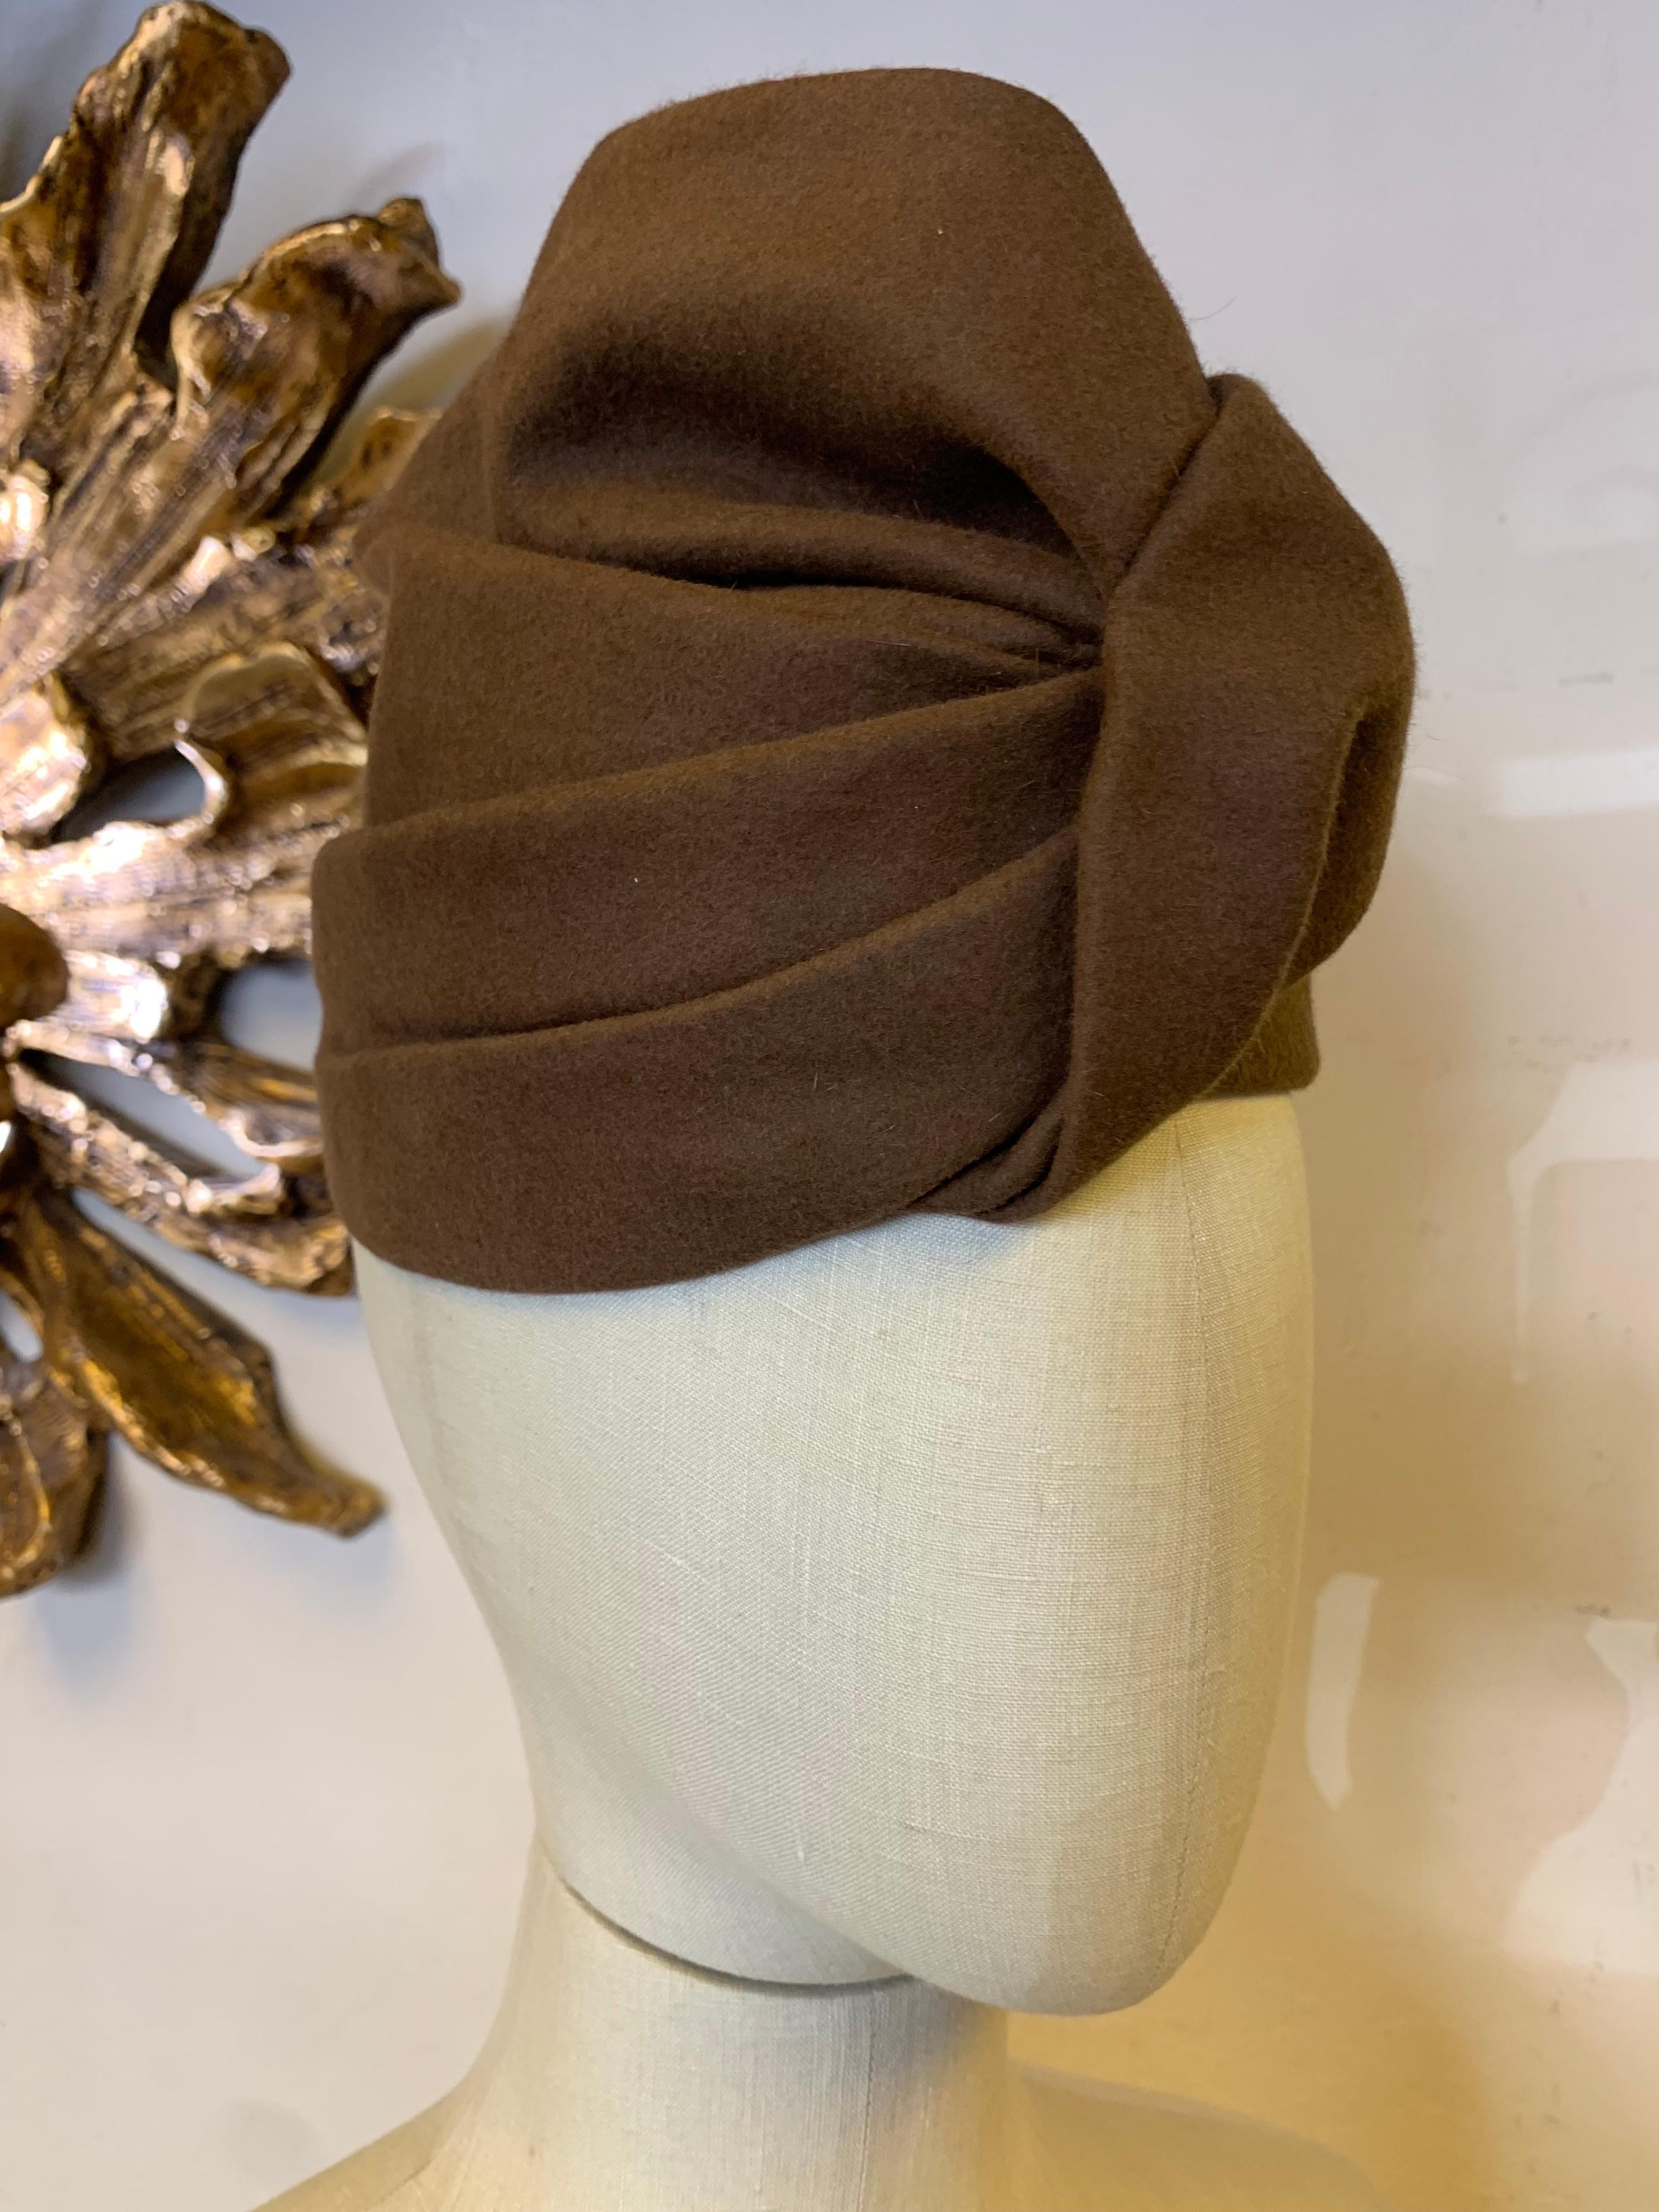 Chapeau turban en feutre fin de châtaigne Hattie Carnegie des années 1940 :  Un design simple et saisissant réalisé par une modiste et designer de renom. Taille petite.